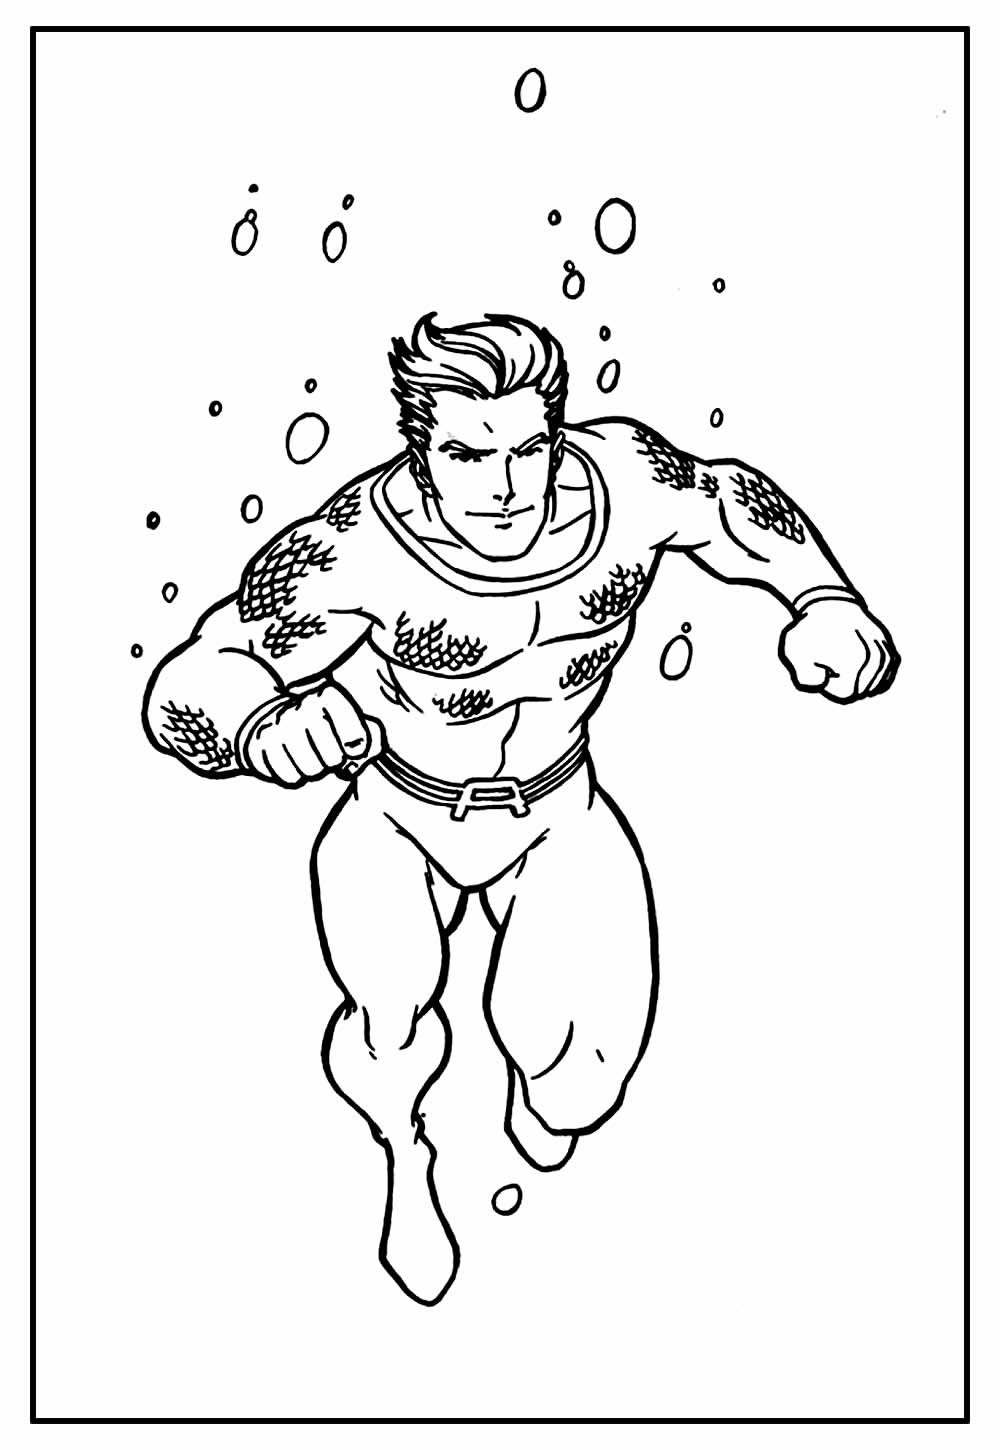 Desenho do Aquaman para colorir